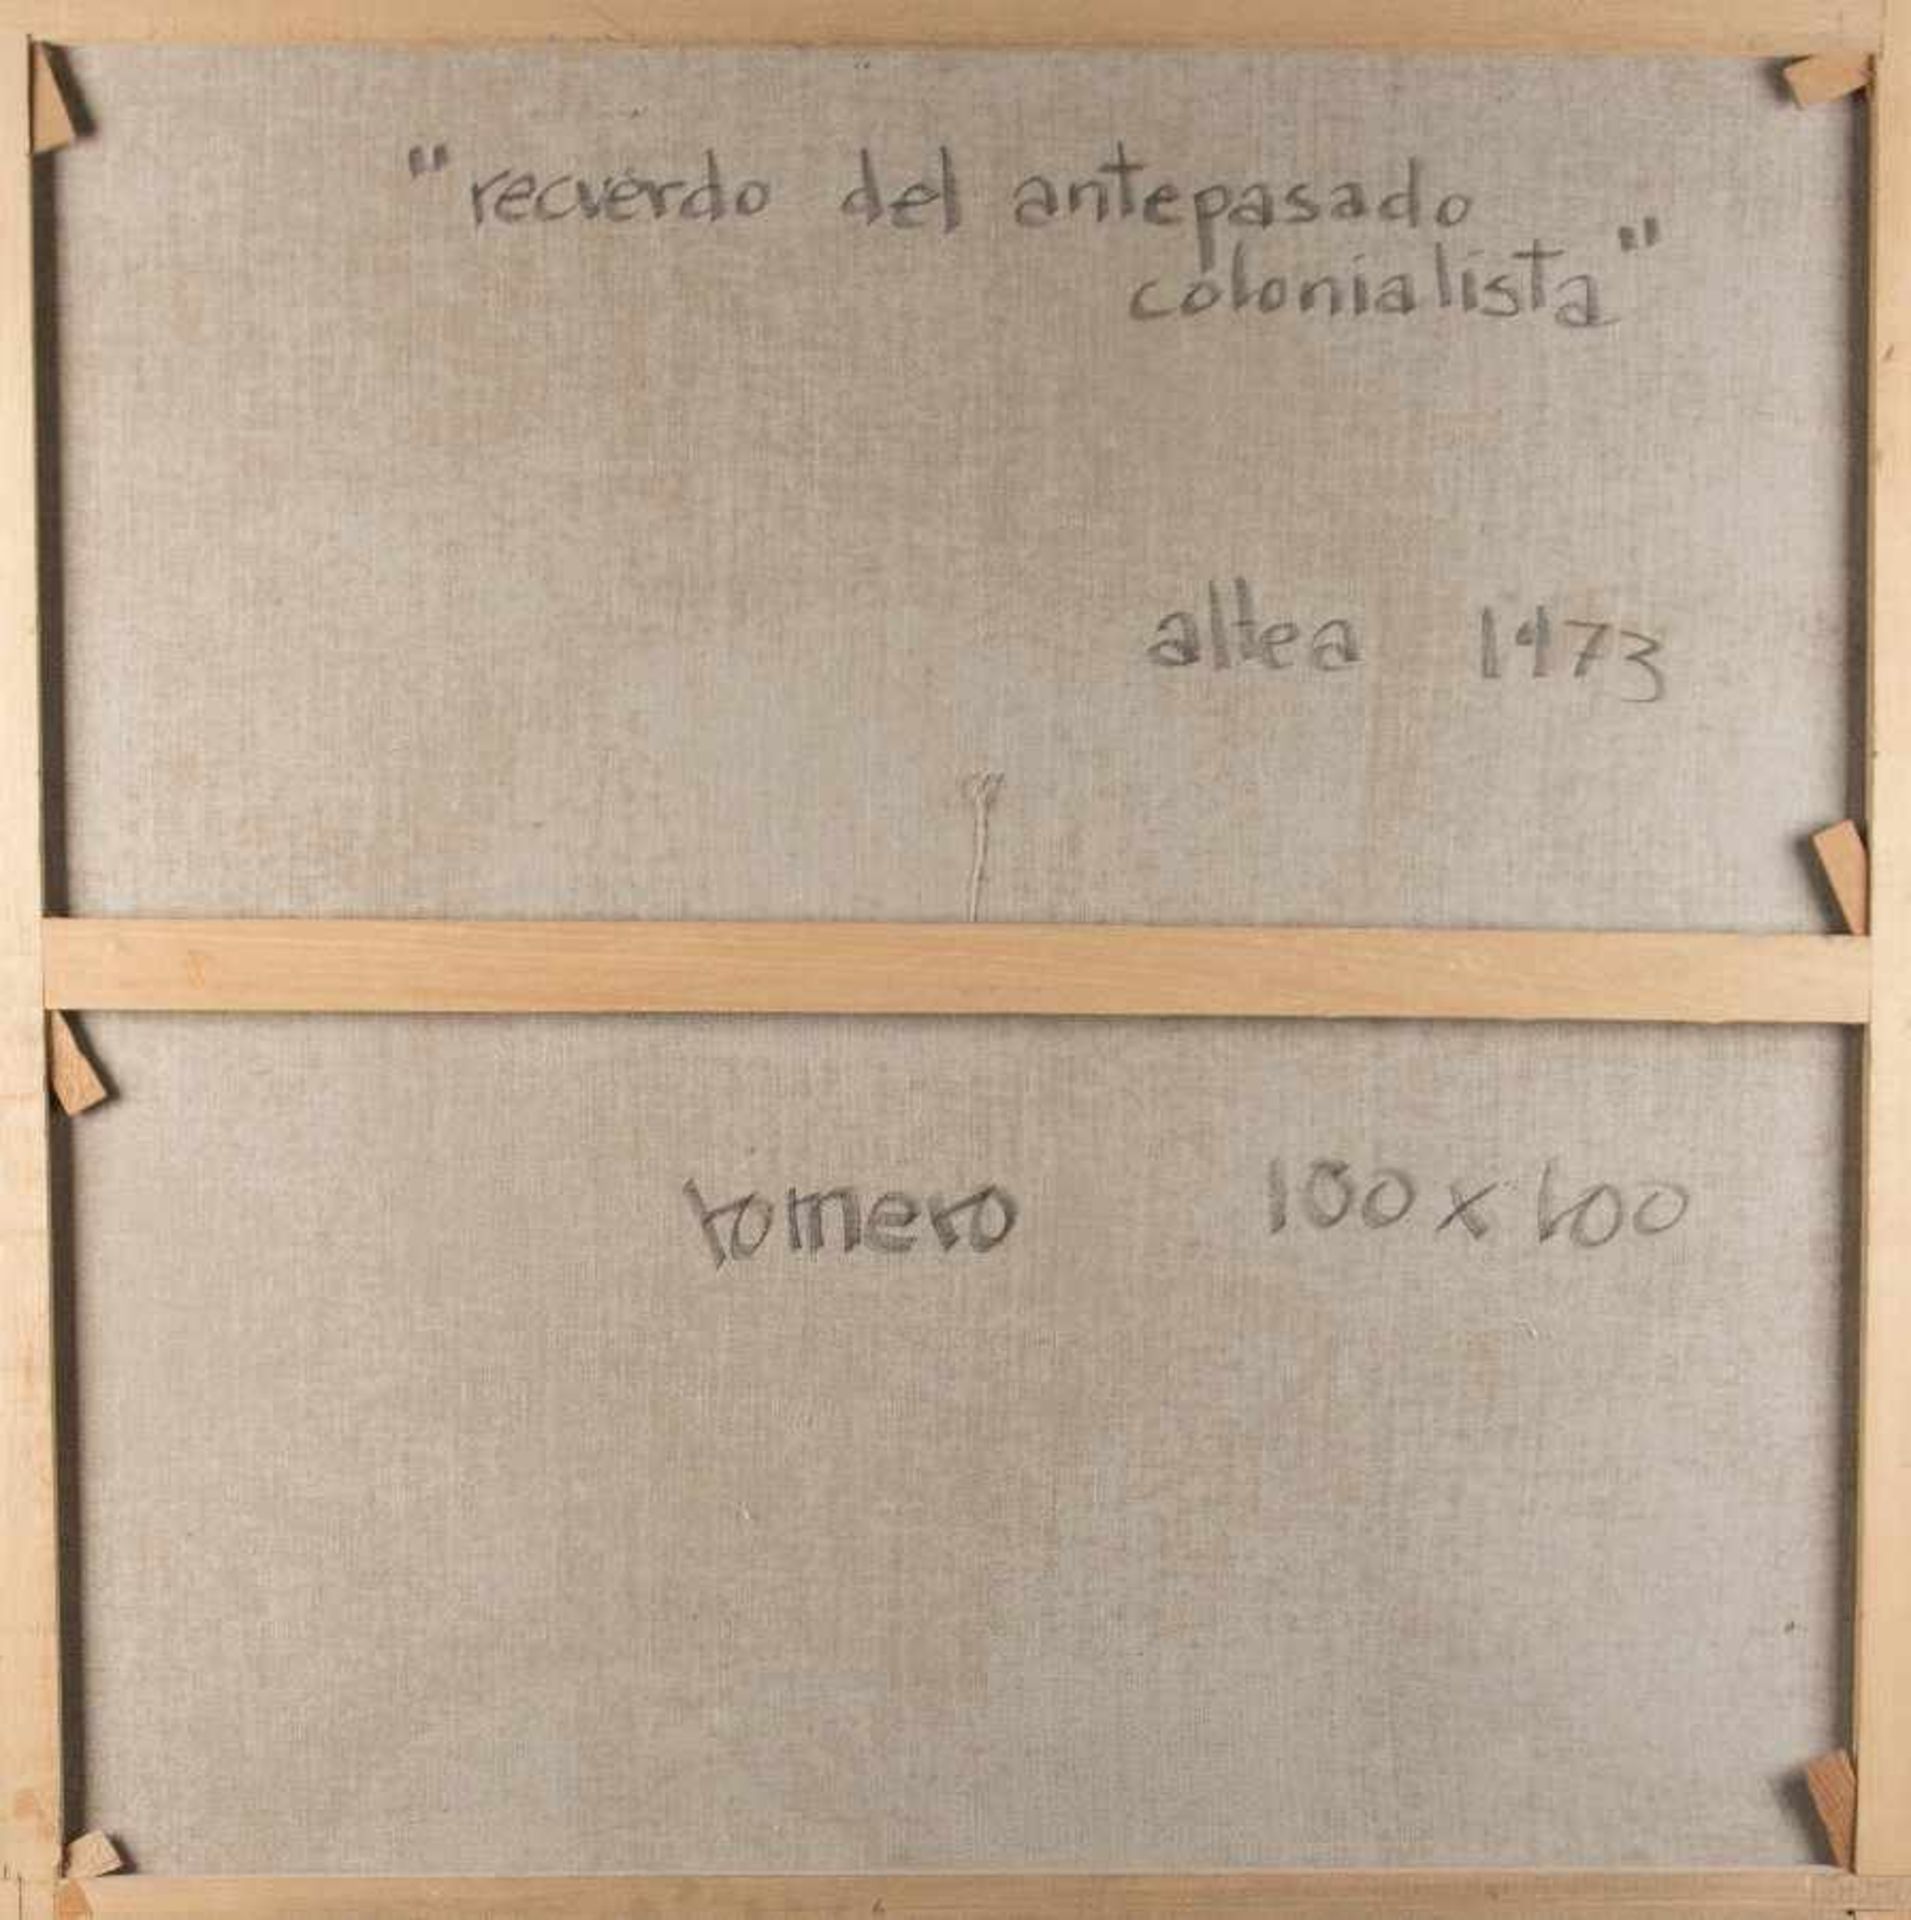 RomeroMaler der 2. Hälfte des 20. Jh.Relverdo del antepasado colonialistaÖl auf Lwd; H 100 cm, B 100 - Bild 2 aus 2